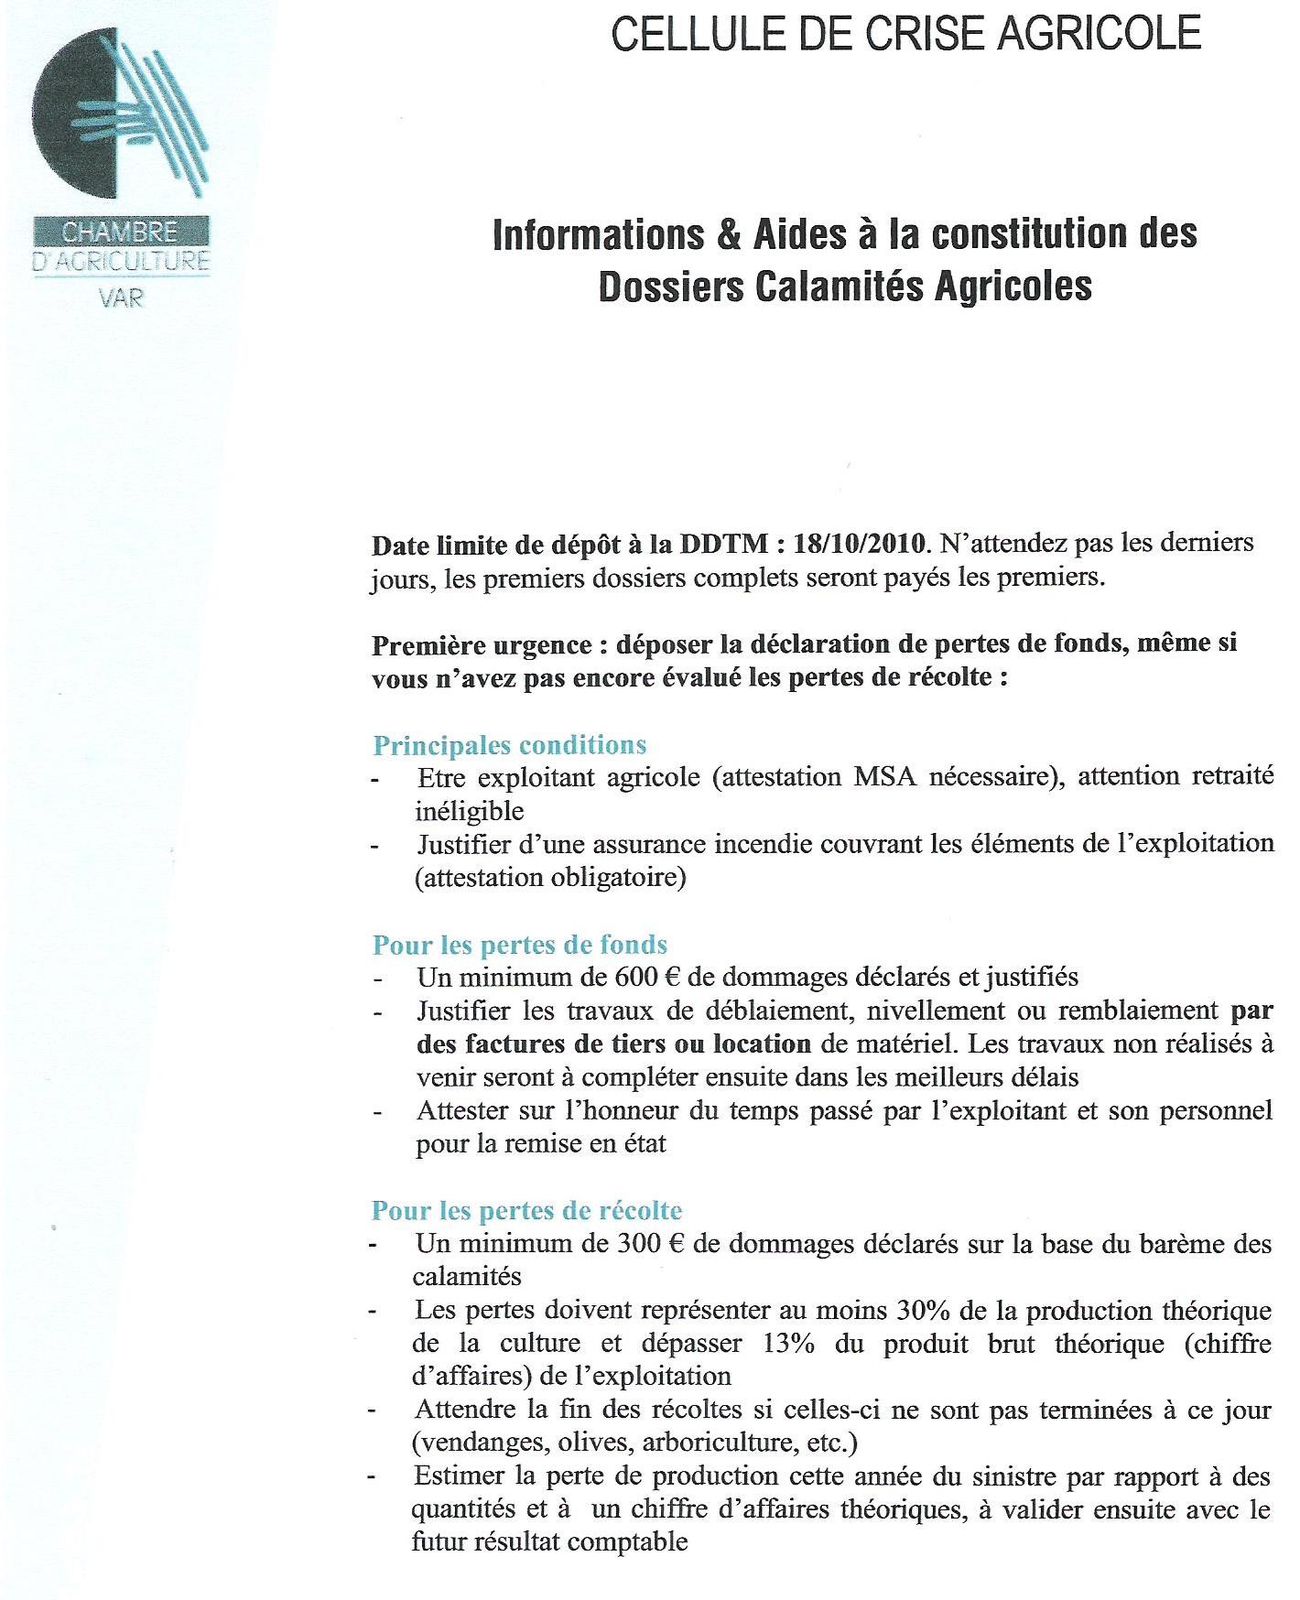 dossier-calamites-agricoles-1-2010-002-copies.jpg